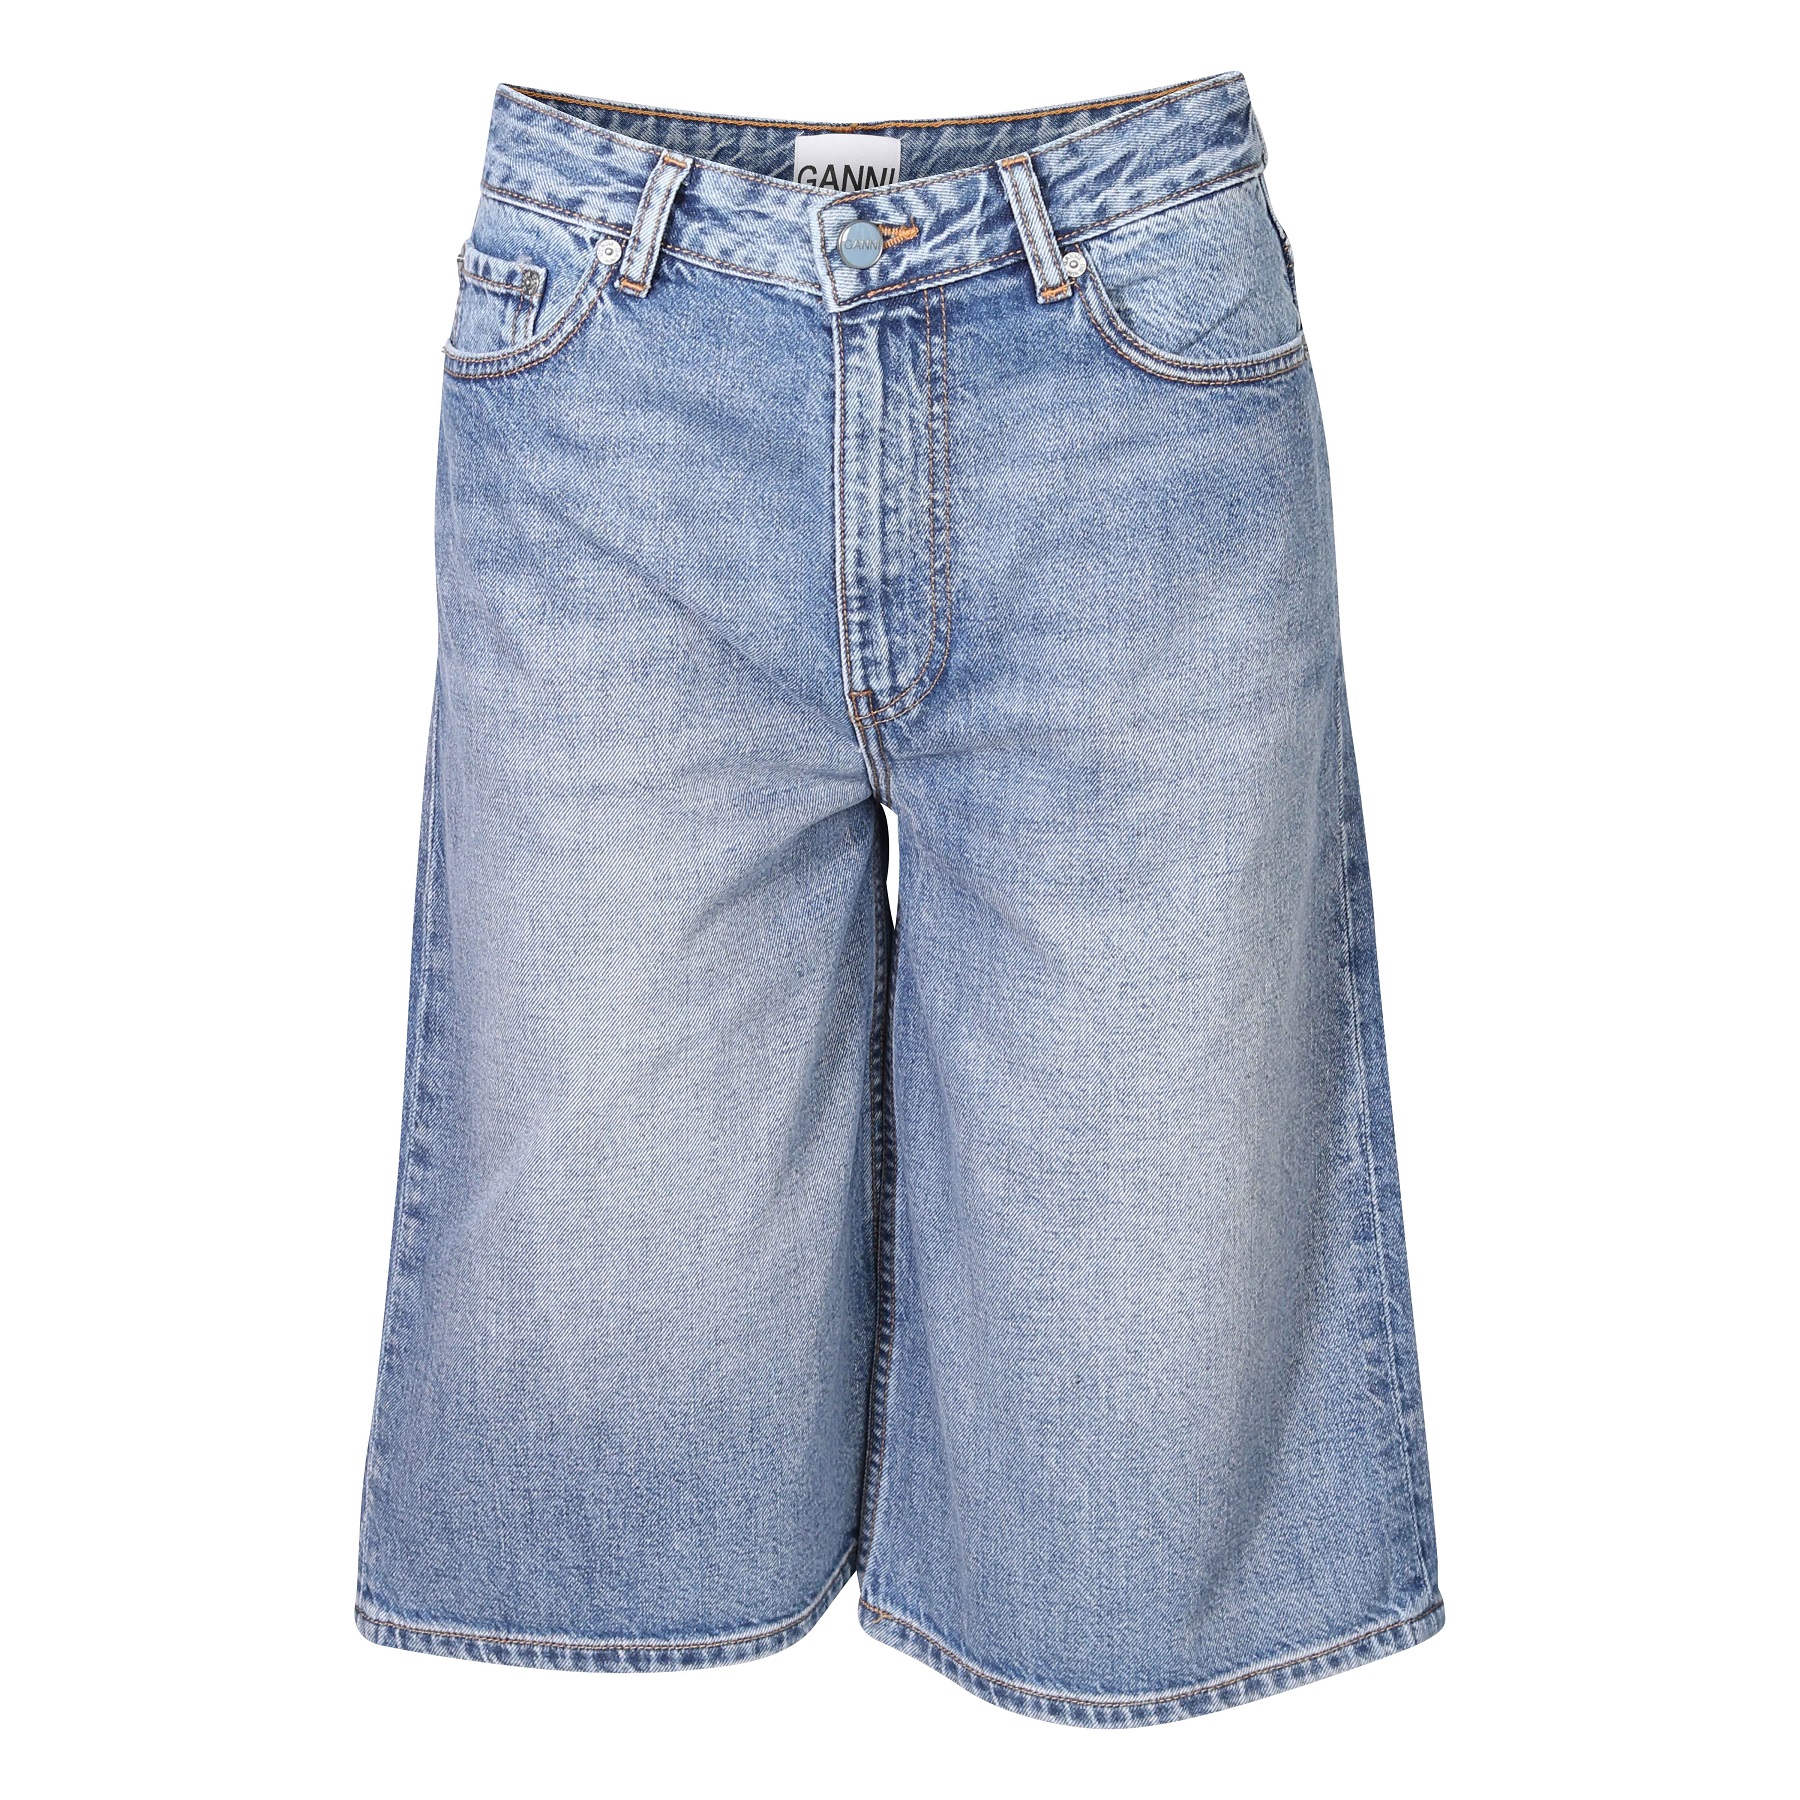 GANNI Vintage Washed Denim Wide Shorts 25